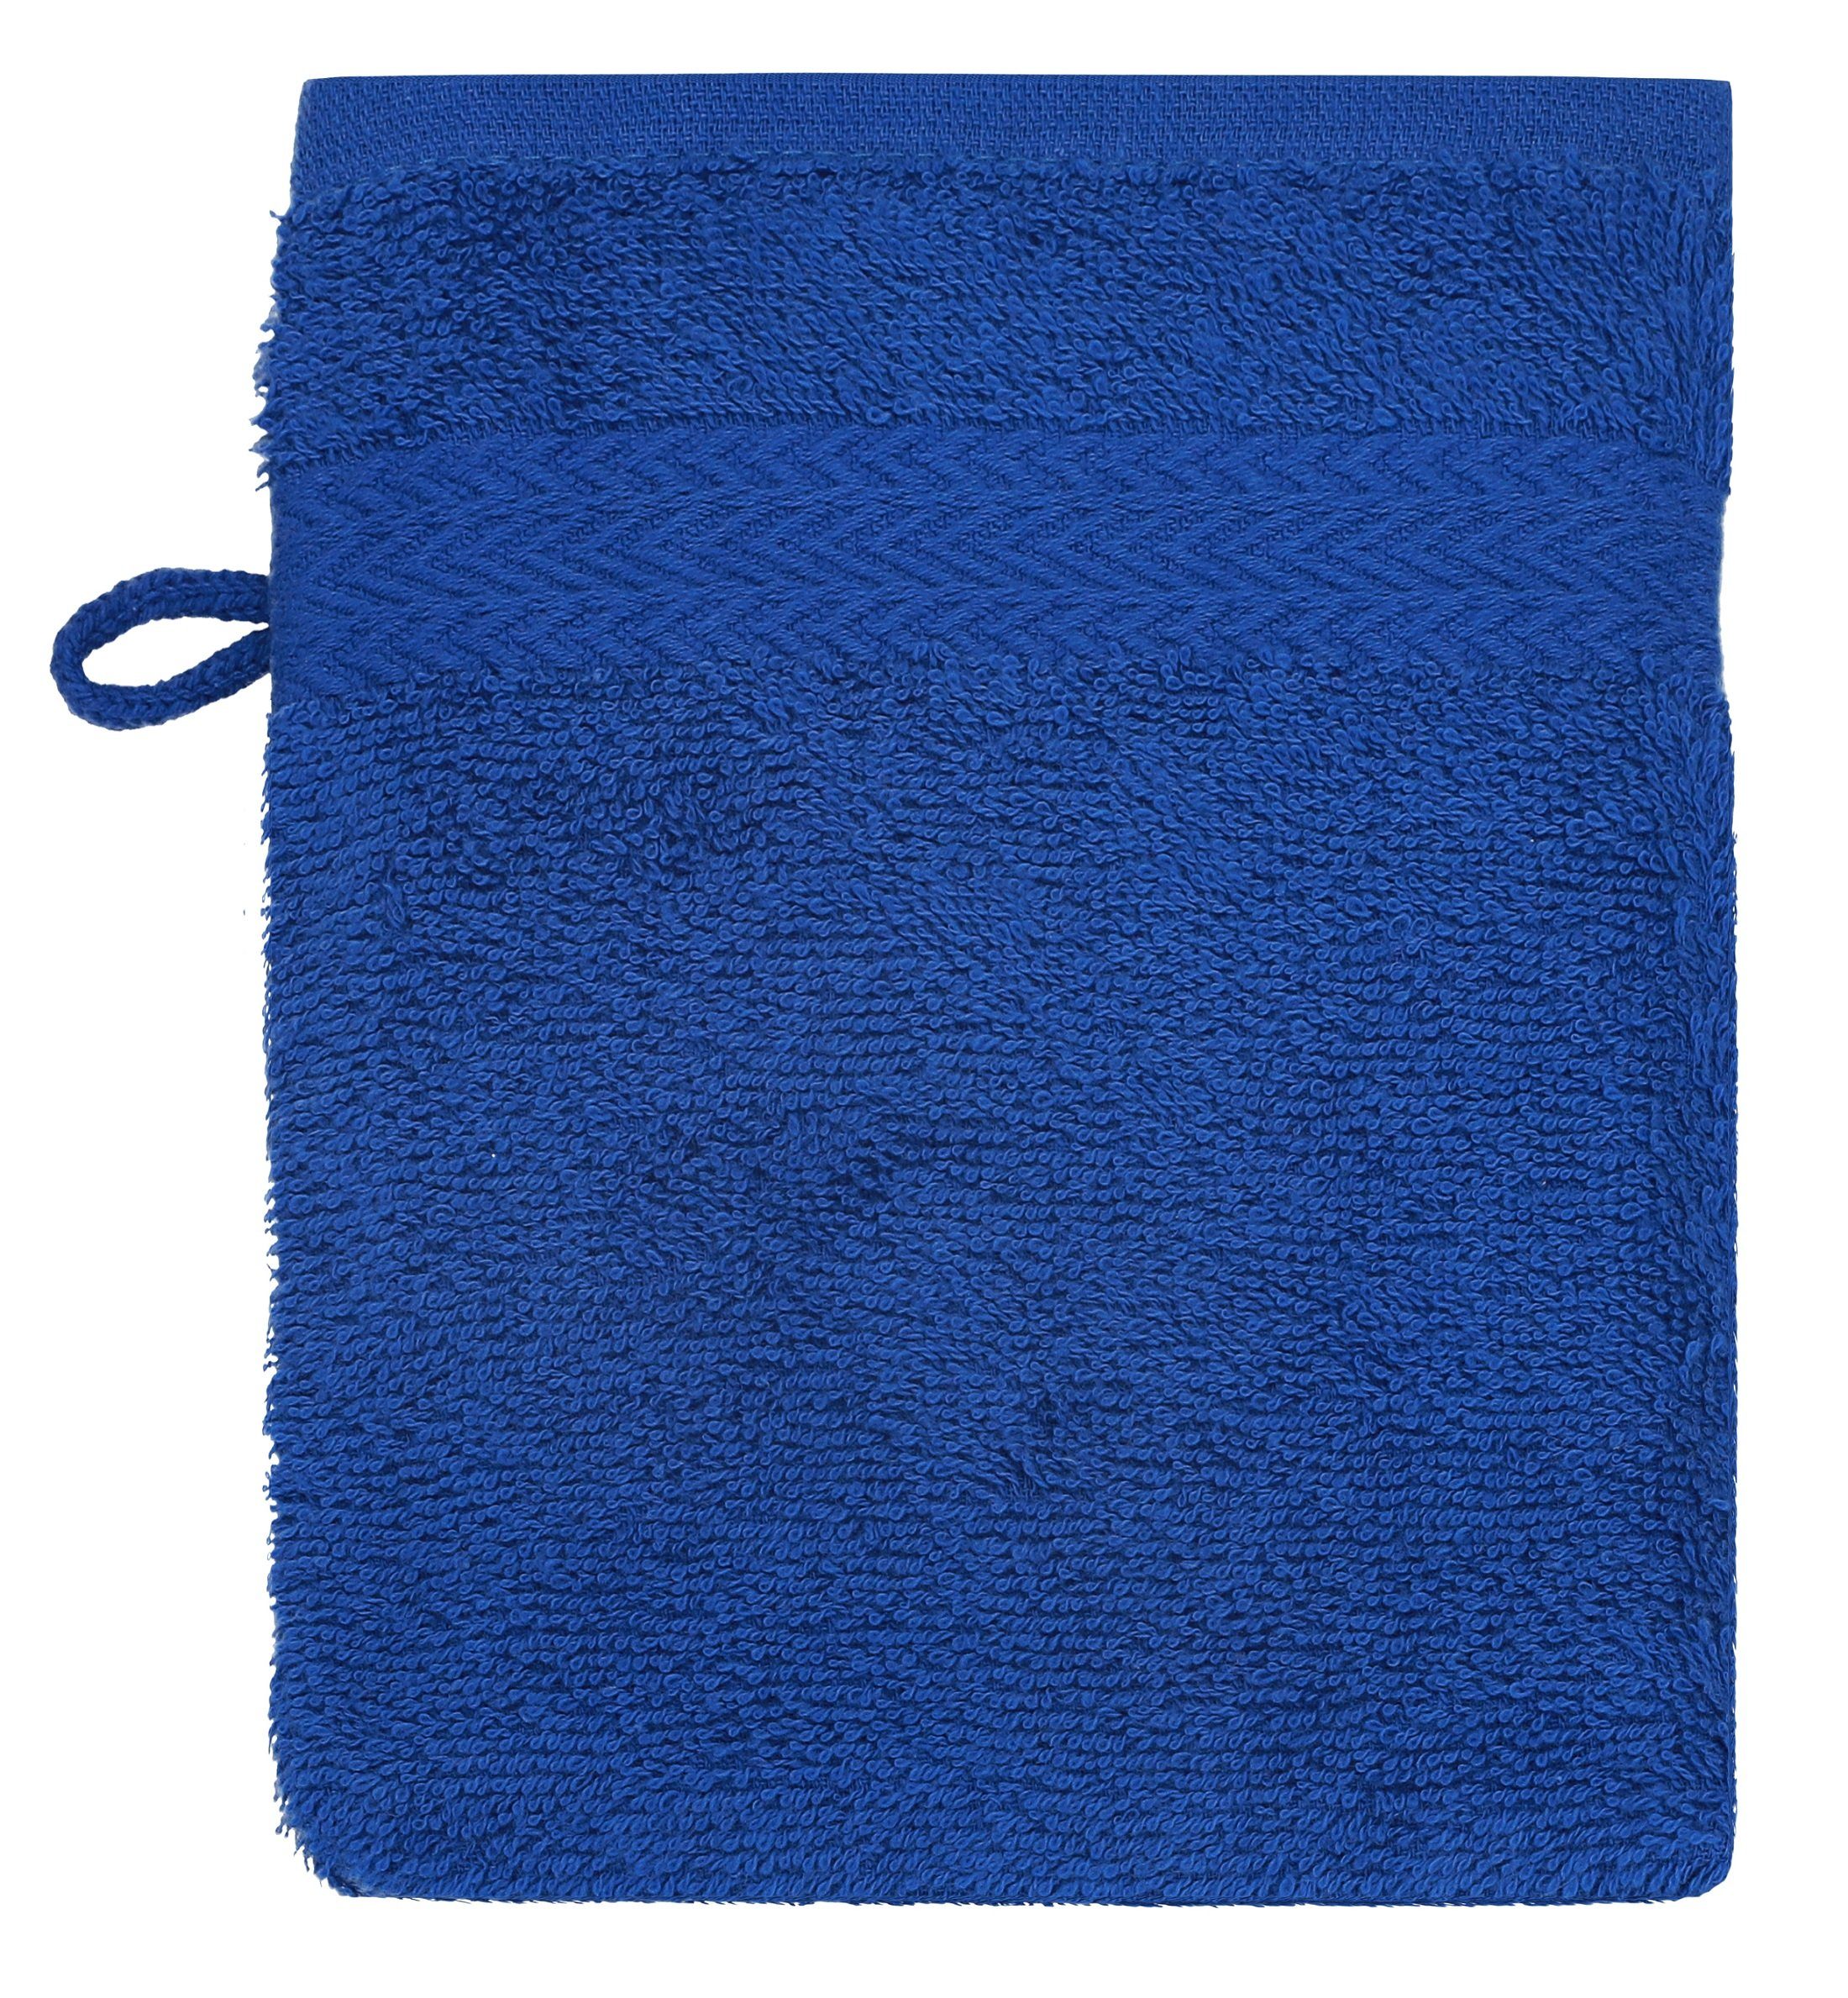 Betz Waschhandschuh 10 Stück Waschhandschuhe und Farbe Premium Waschlappen Royalblau 100% Baumwolle Set dunkelblau cm 16x21